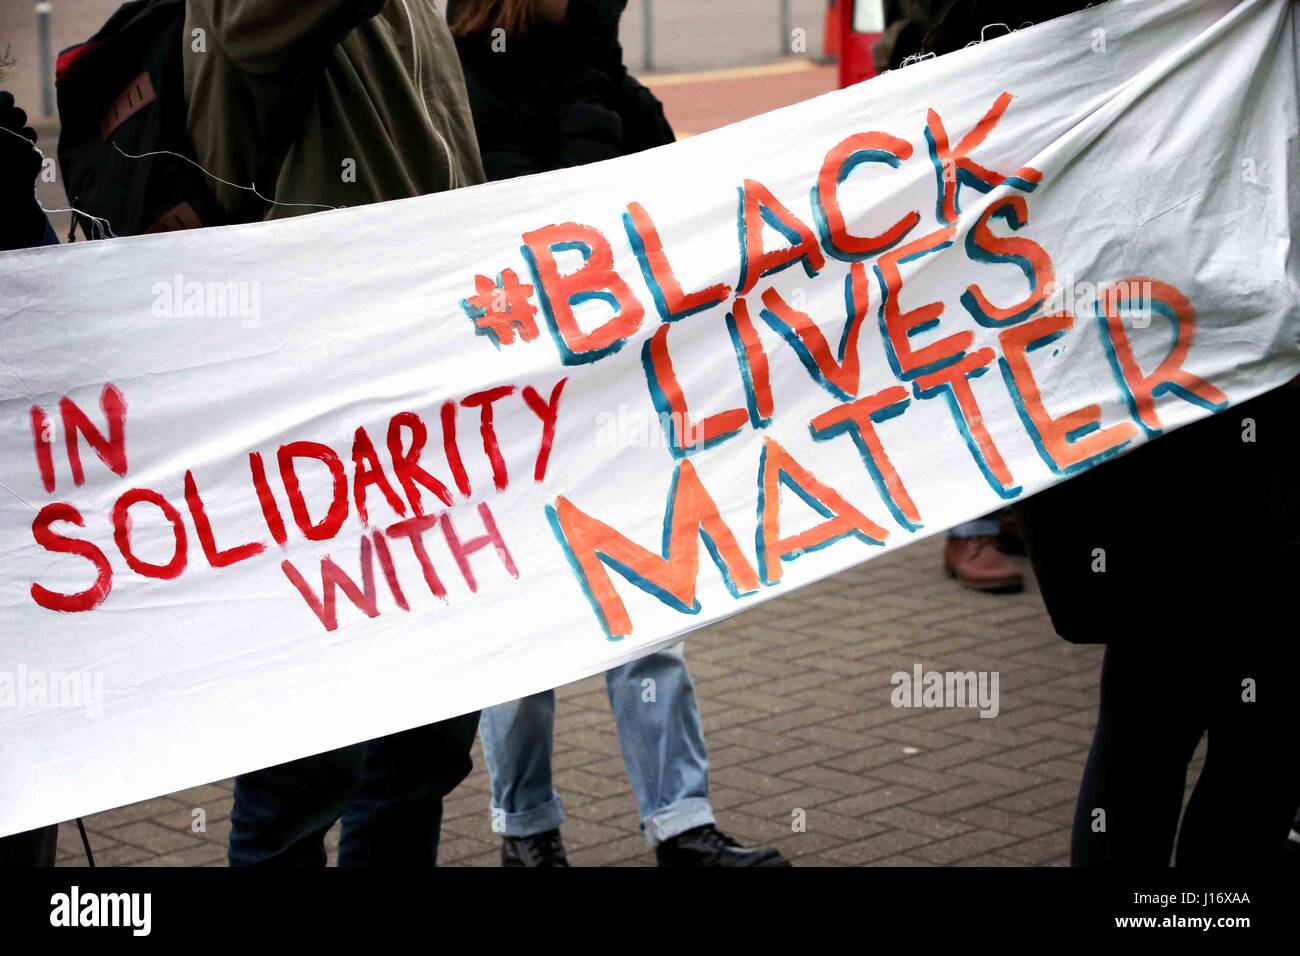 Menschen halten ein Schild mit der Aufschrift "In Solidarität mit Black lebt Angelegenheit". Stockfoto